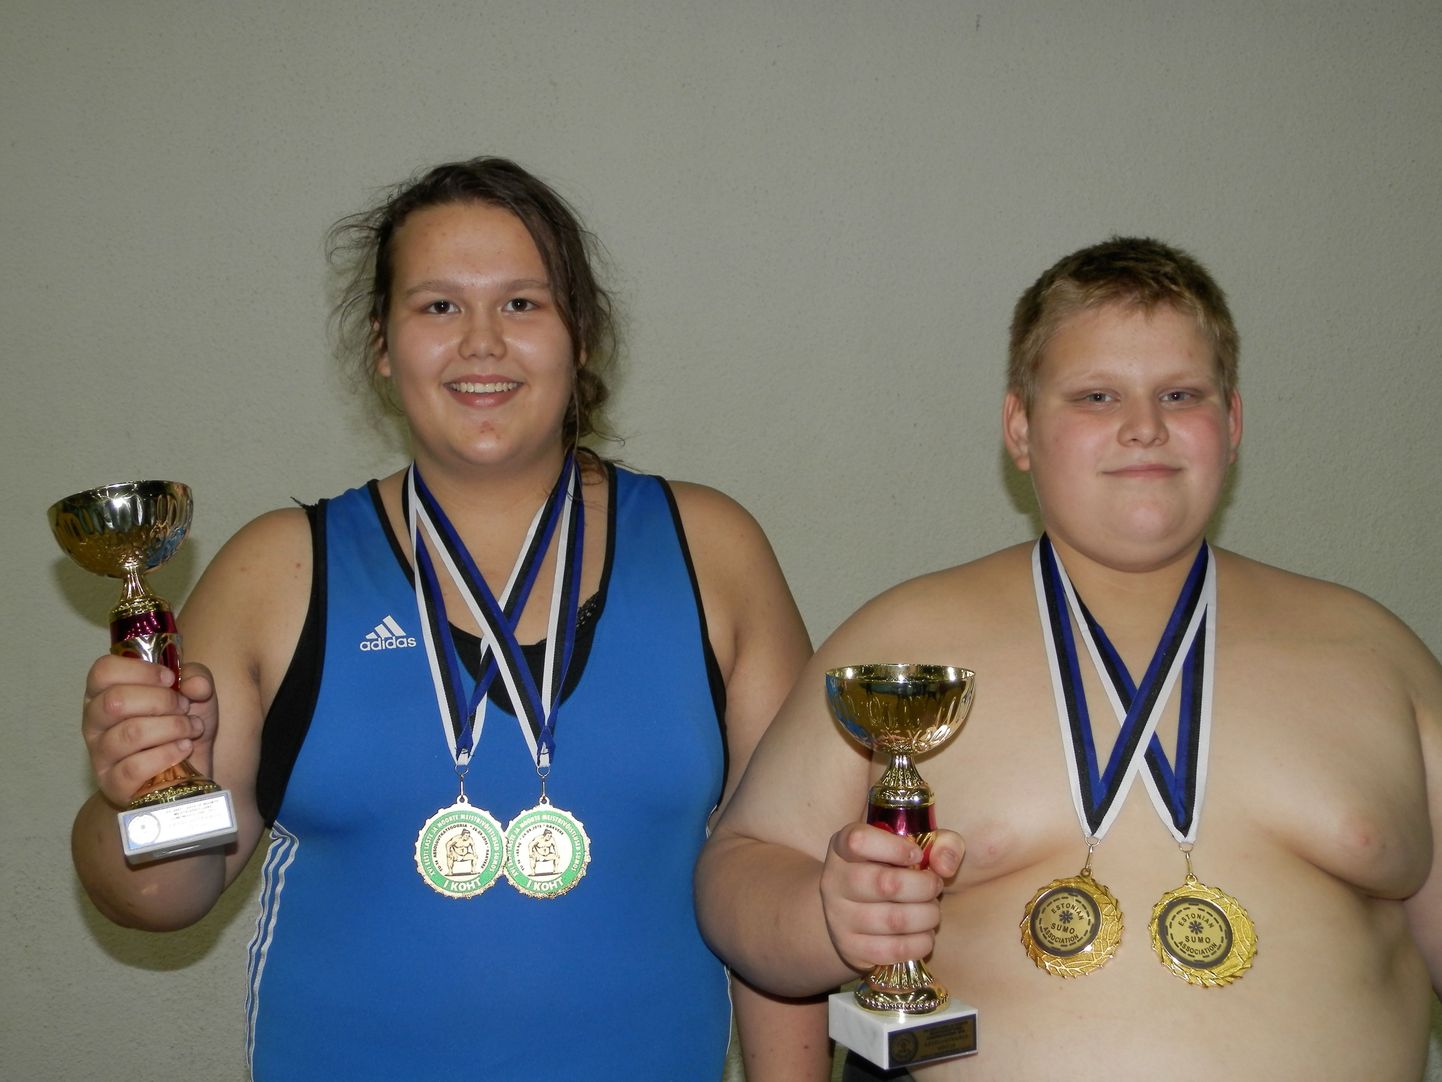 Eesti noorte meistrivõistlustelt sumos saavutas Valga põhikooli noormees Xsander Solbaja (vasakul) kolm kuldset medalit ning meistritiitli. Nüüd ootavad noormeest ees peagi algavad Euroopa meistrivõistlused.